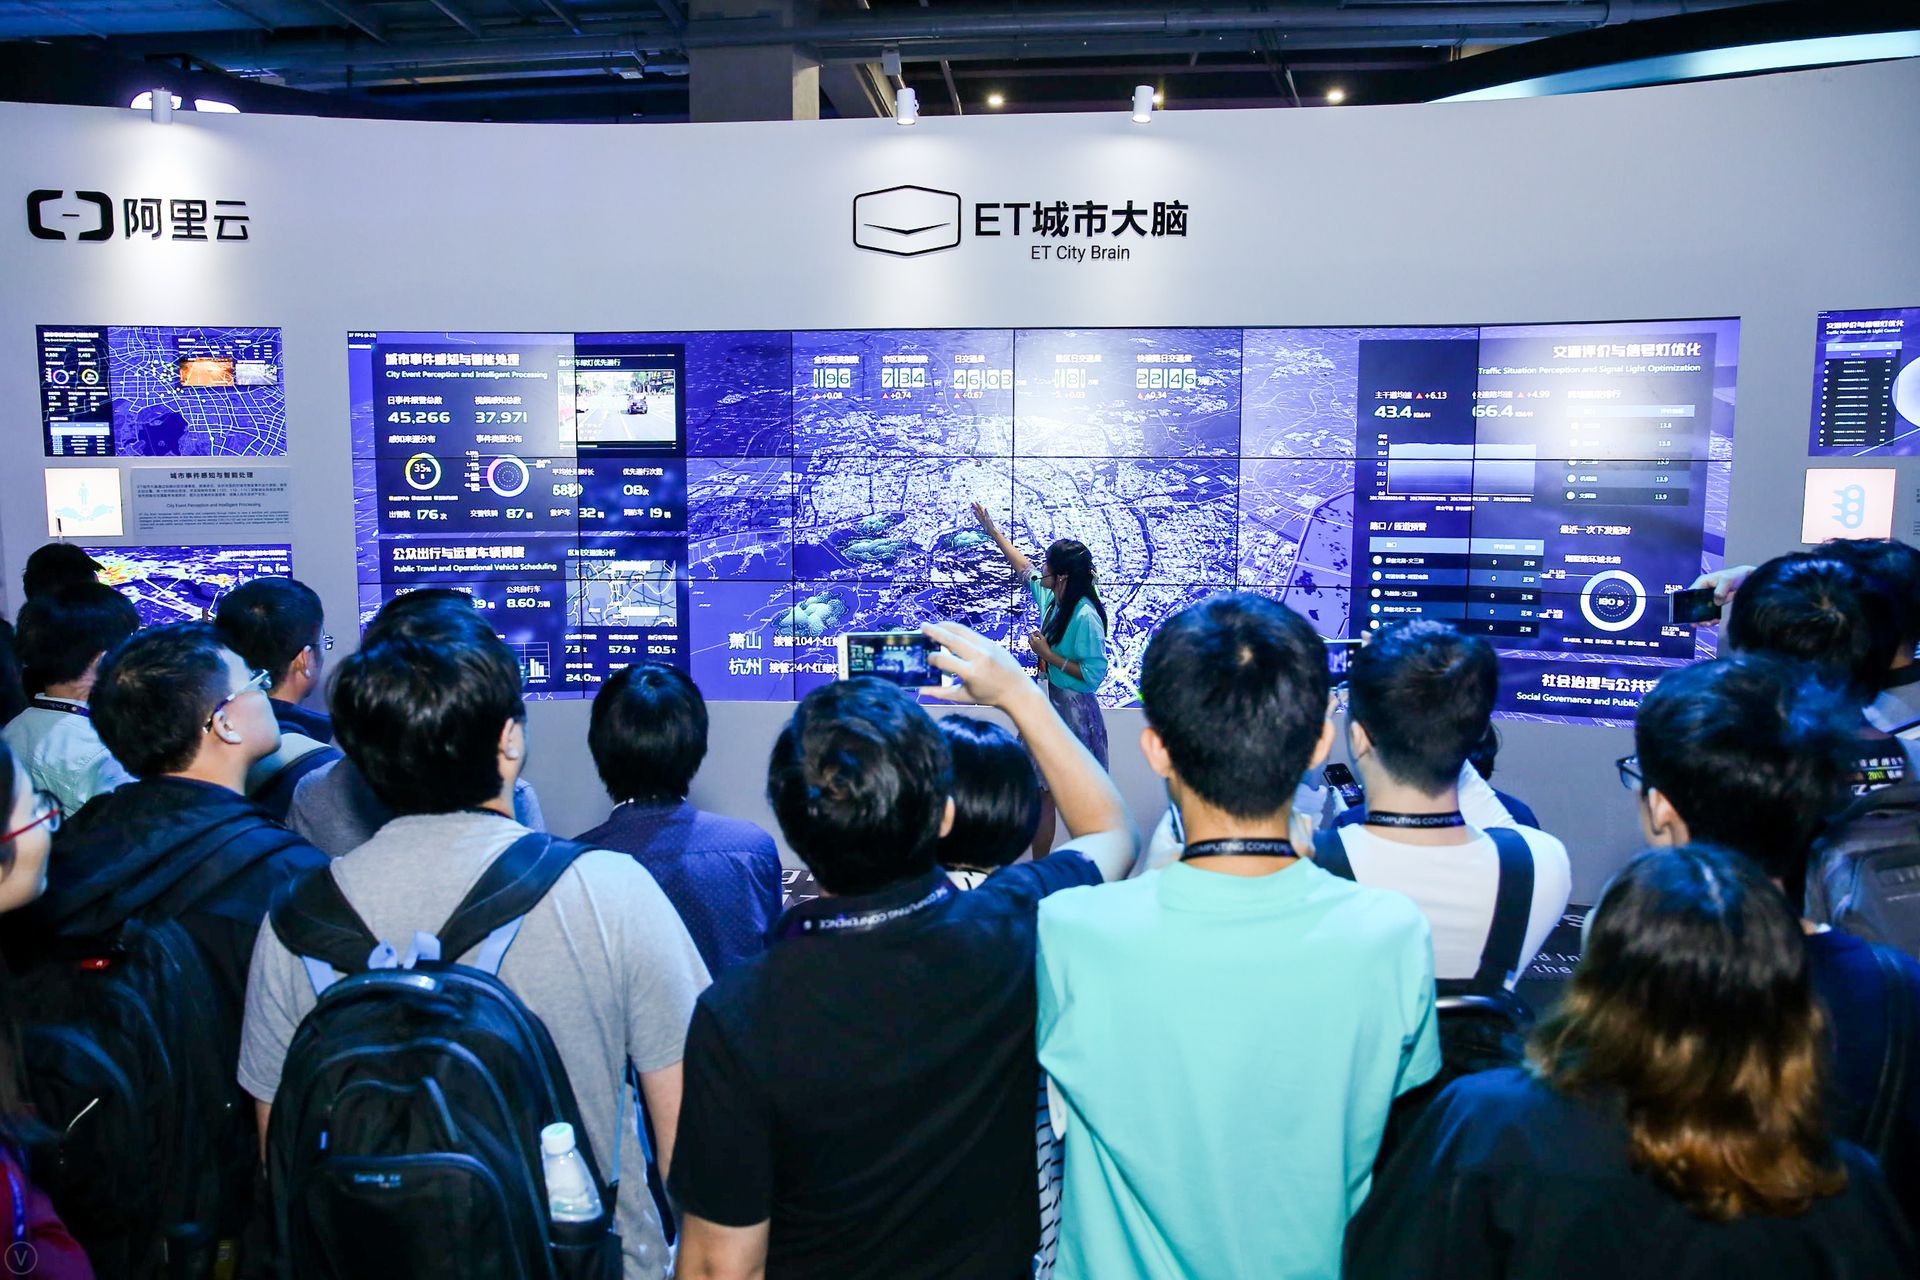 阿里云ET城市大脑1.0在杭州云栖大会发布.jpg